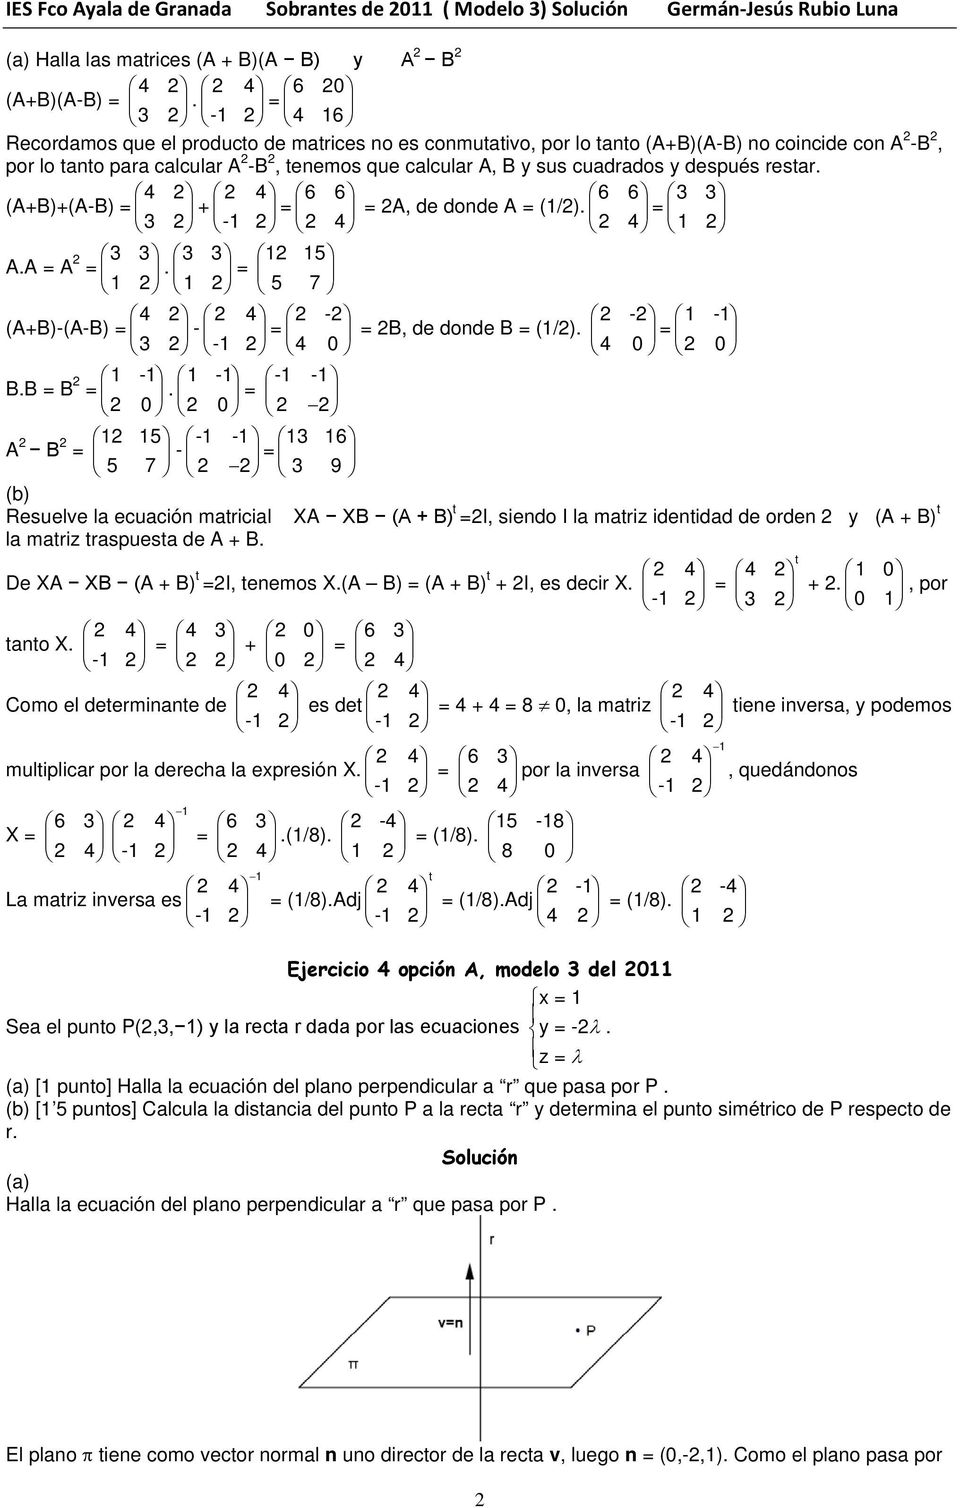 1 15 1 1 5 7 (A+B)-(A-B) 4 - - - B, de donde B (1/) 1-1 3 4 4 BB B 1-1 1-1 -1-1 A B 1 15-1 -1 13 16-5 7 3 9 Resuelve la ecuación matricial XA XB (A + B) t I, siendo I la matriz identidad de orden y